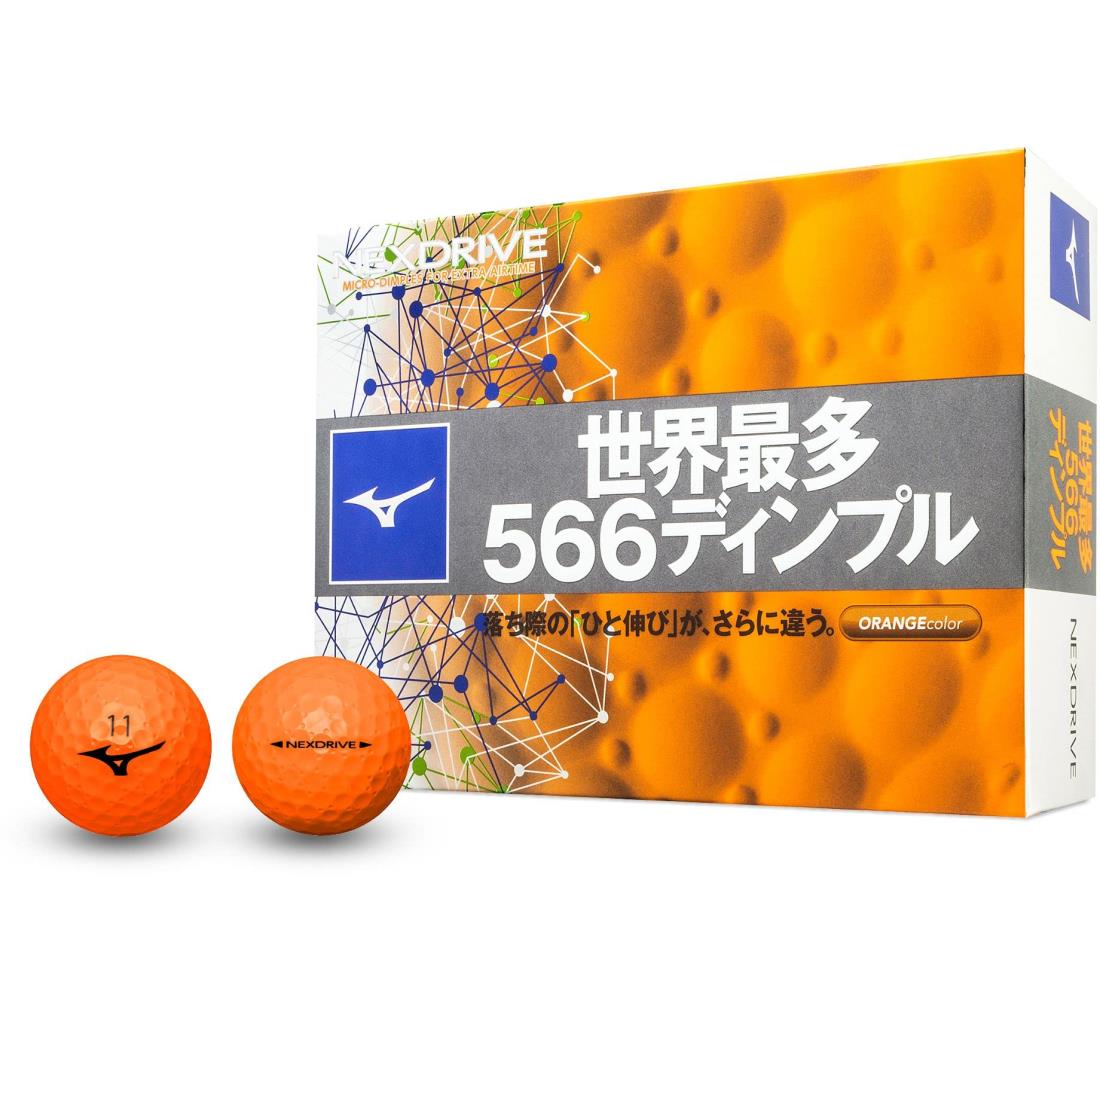 MIZUNO(ミズノ) ゴルフボール ネクスドライブ オレンジ 1ダース 12個入り ディスタンスタイプ ヘッドスピード全領域対応 ソフトなフィーリング 2ピース構造 5NJBM328